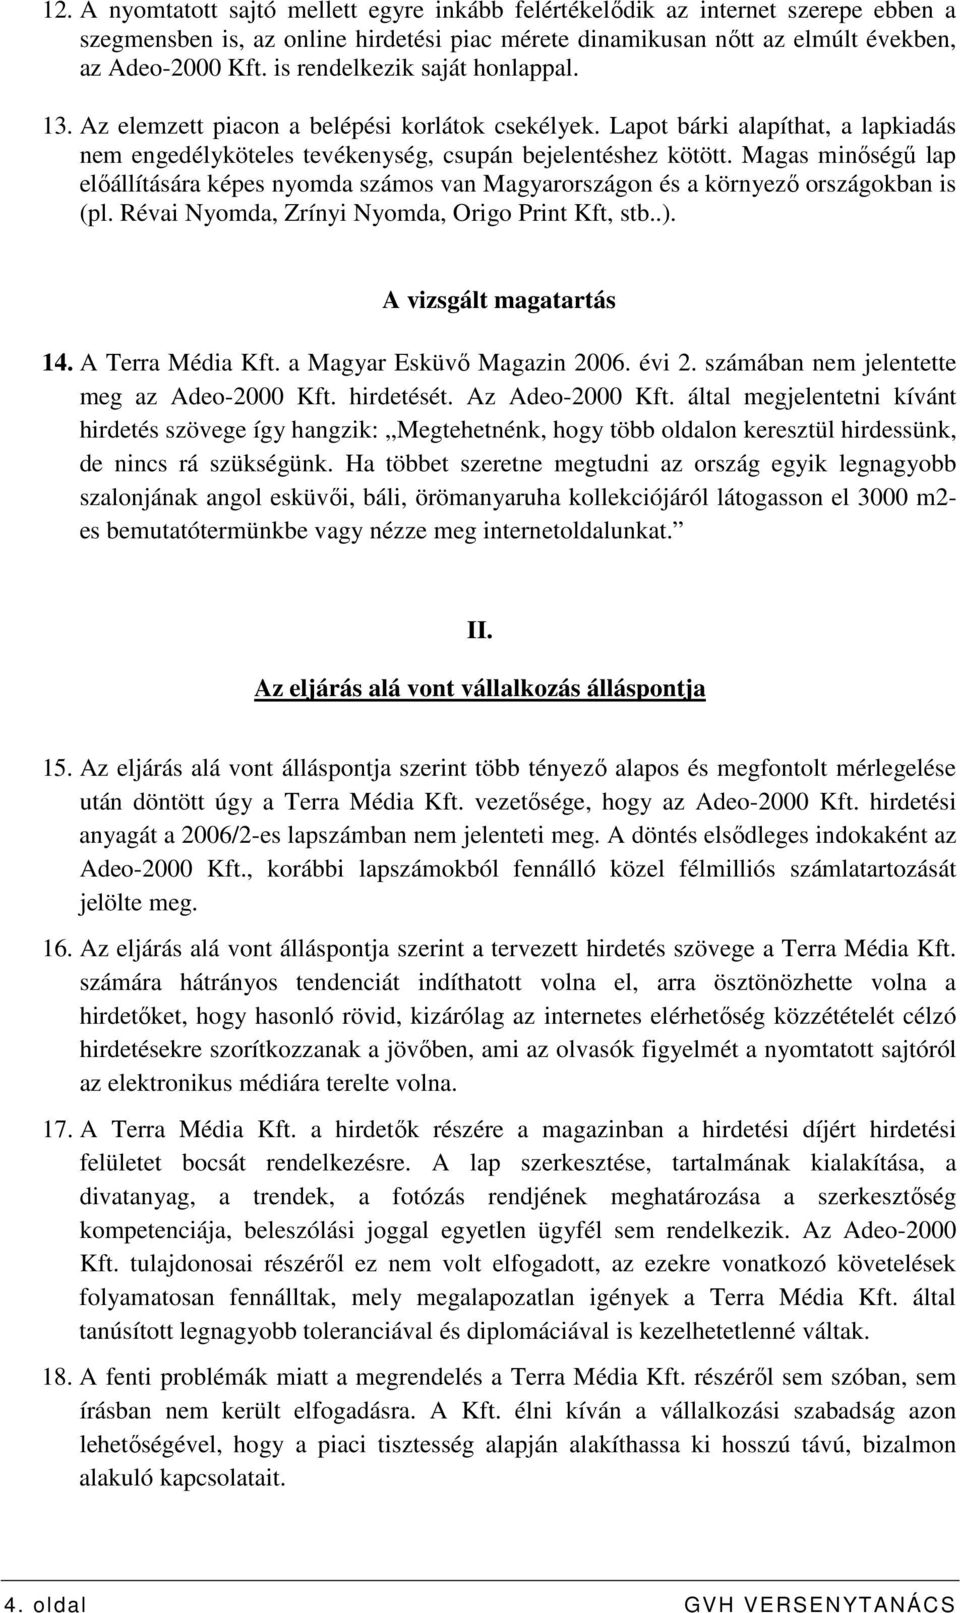 Magas minıségő lap elıállítására képes nyomda számos van Magyarországon és a környezı országokban is (pl. Révai Nyomda, Zrínyi Nyomda, Origo Print Kft, stb..). A vizsgált magatartás 14.